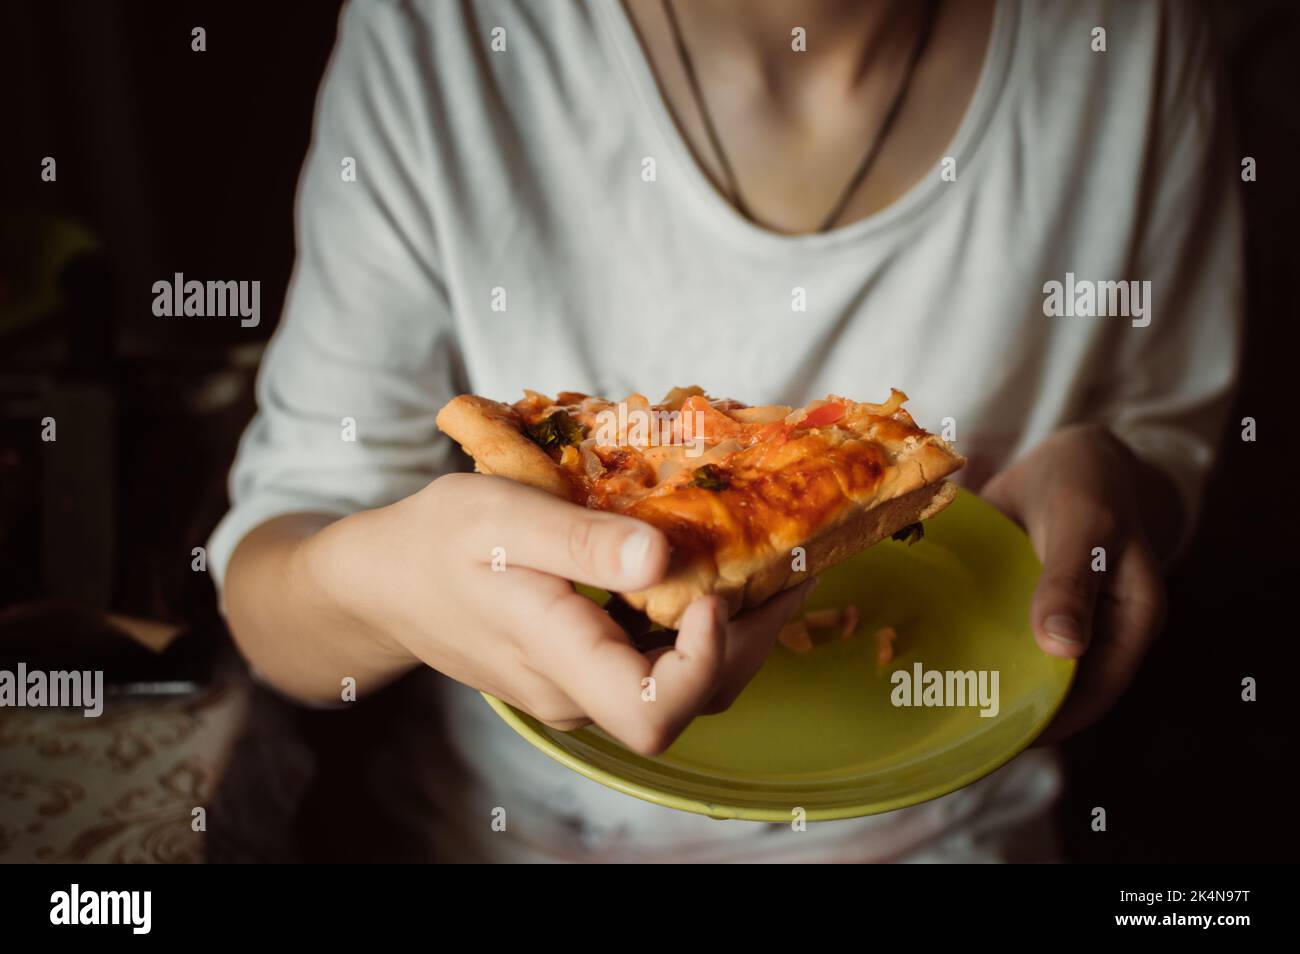 Le mani tengono un pezzo di deliziosa pizza fatta in casa con verdure Foto Stock